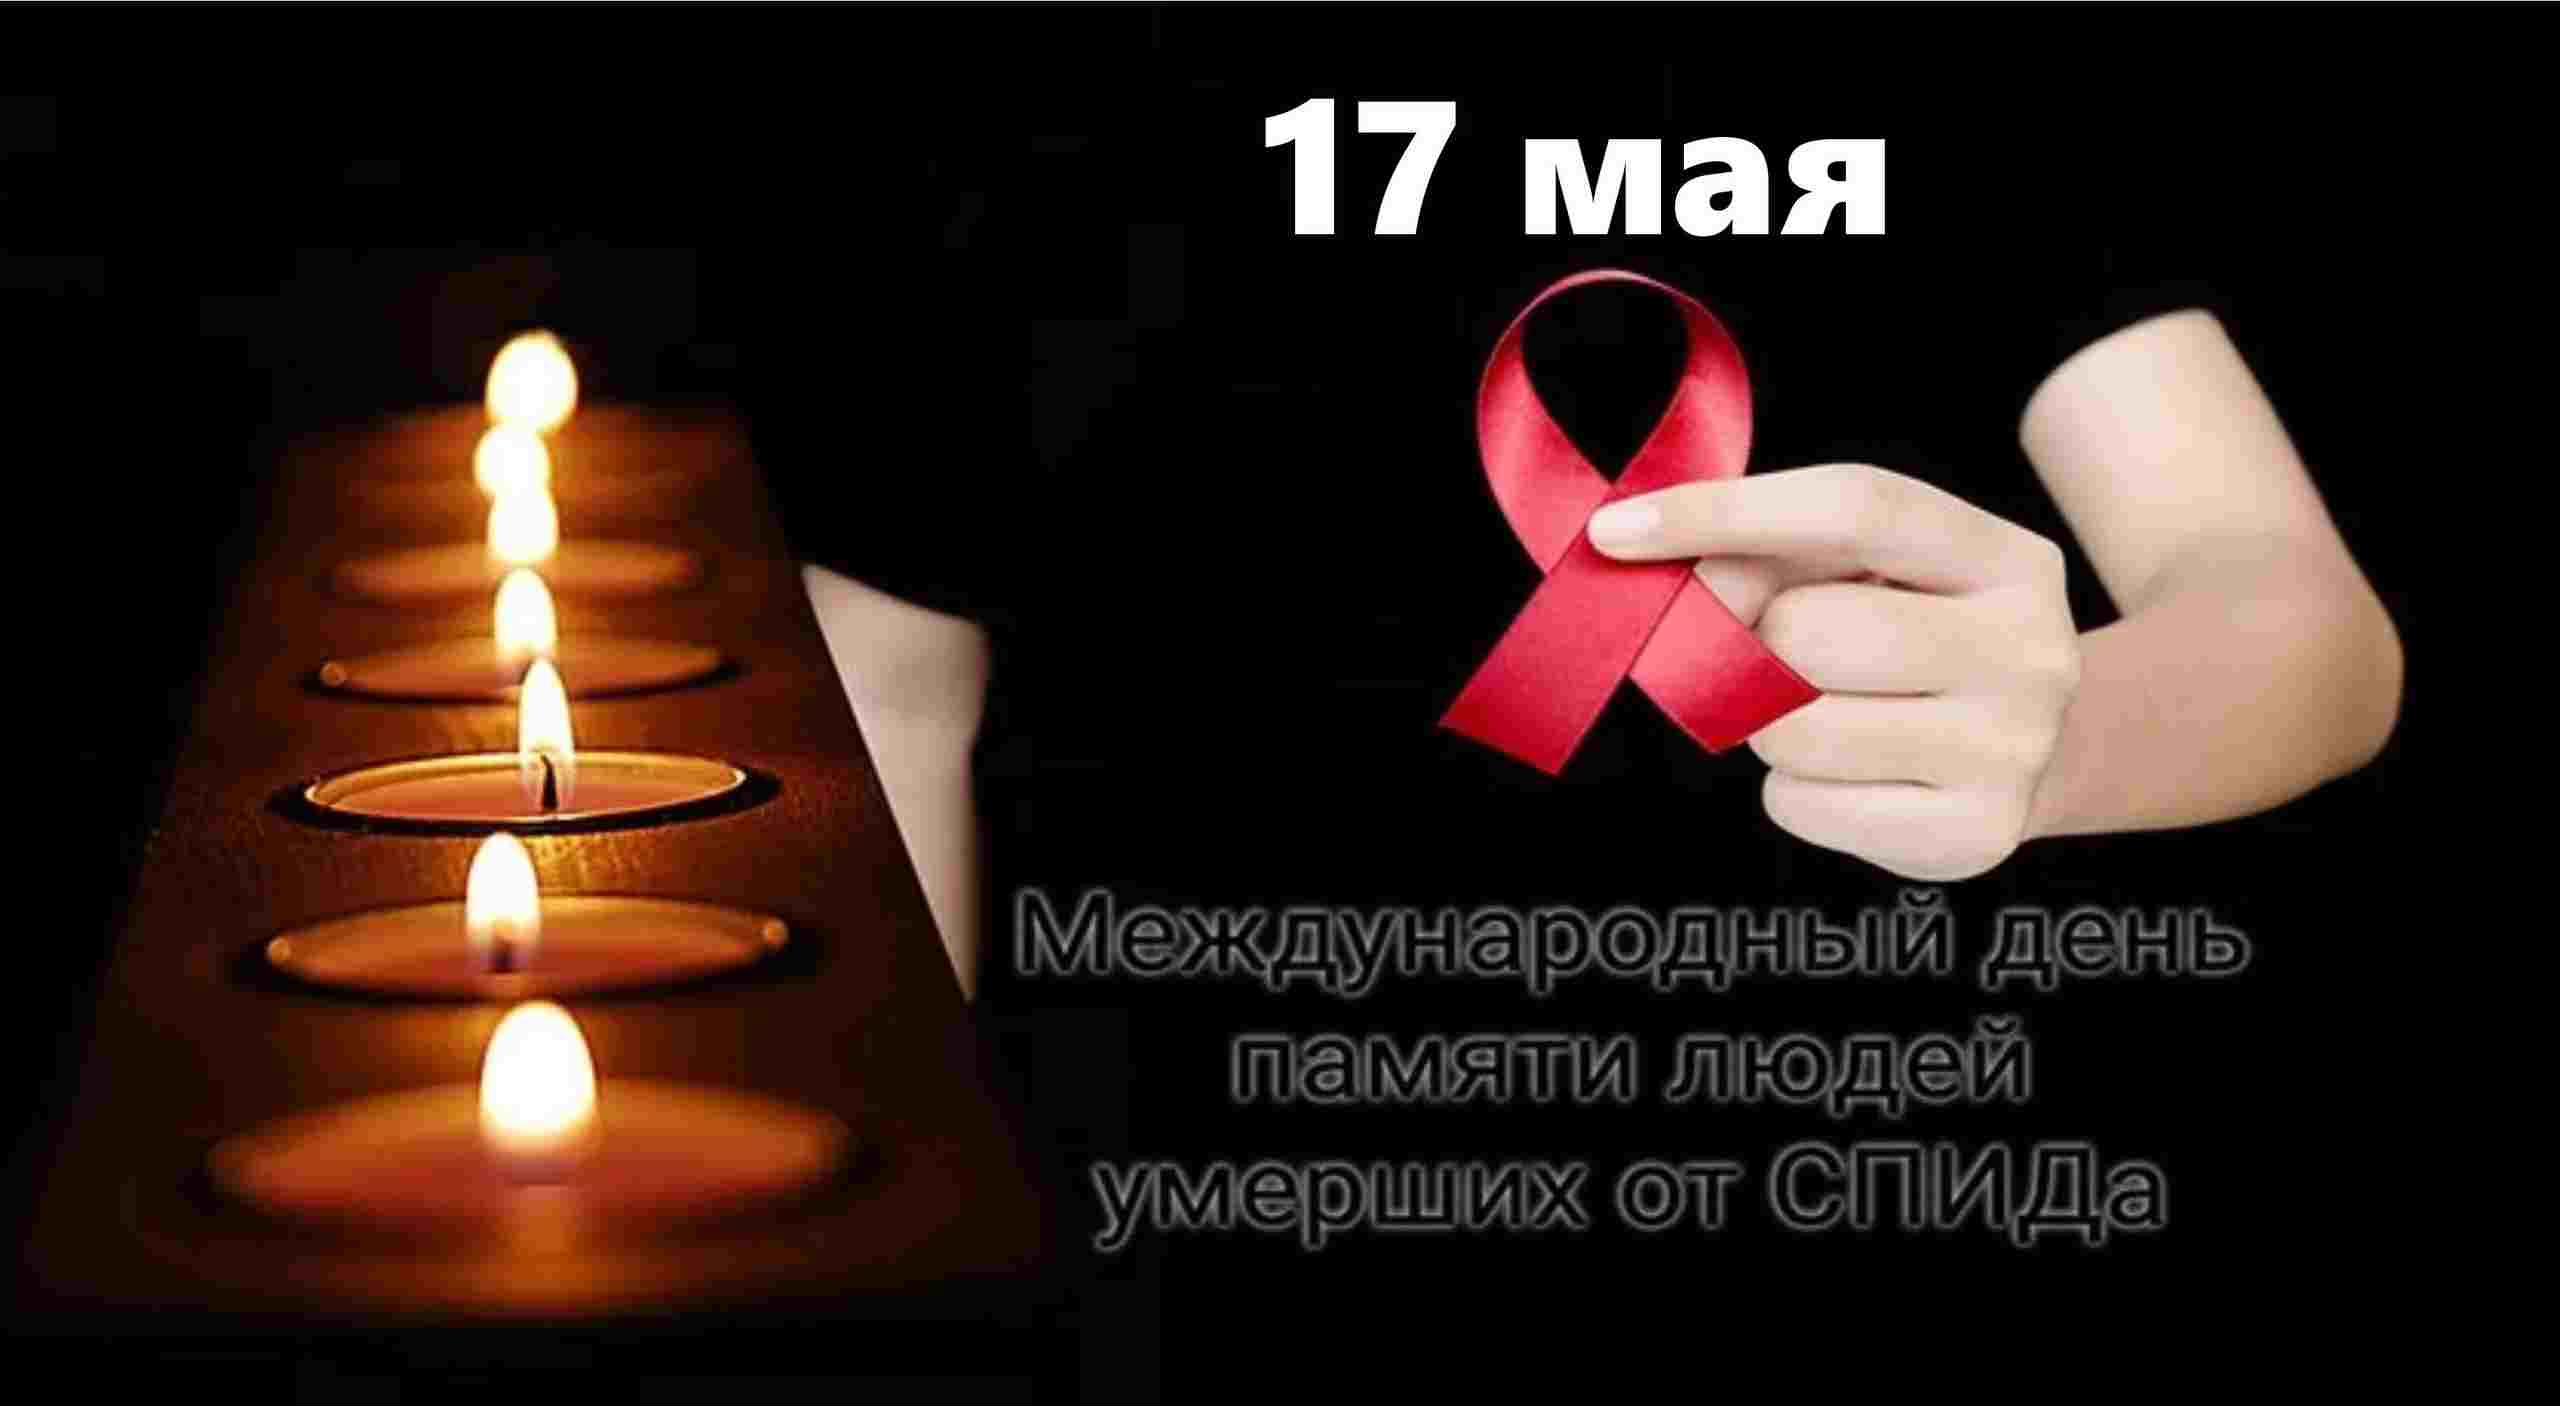 Каждый год в третье воскресенье мая Всемирный день памяти жертв СПИДа!